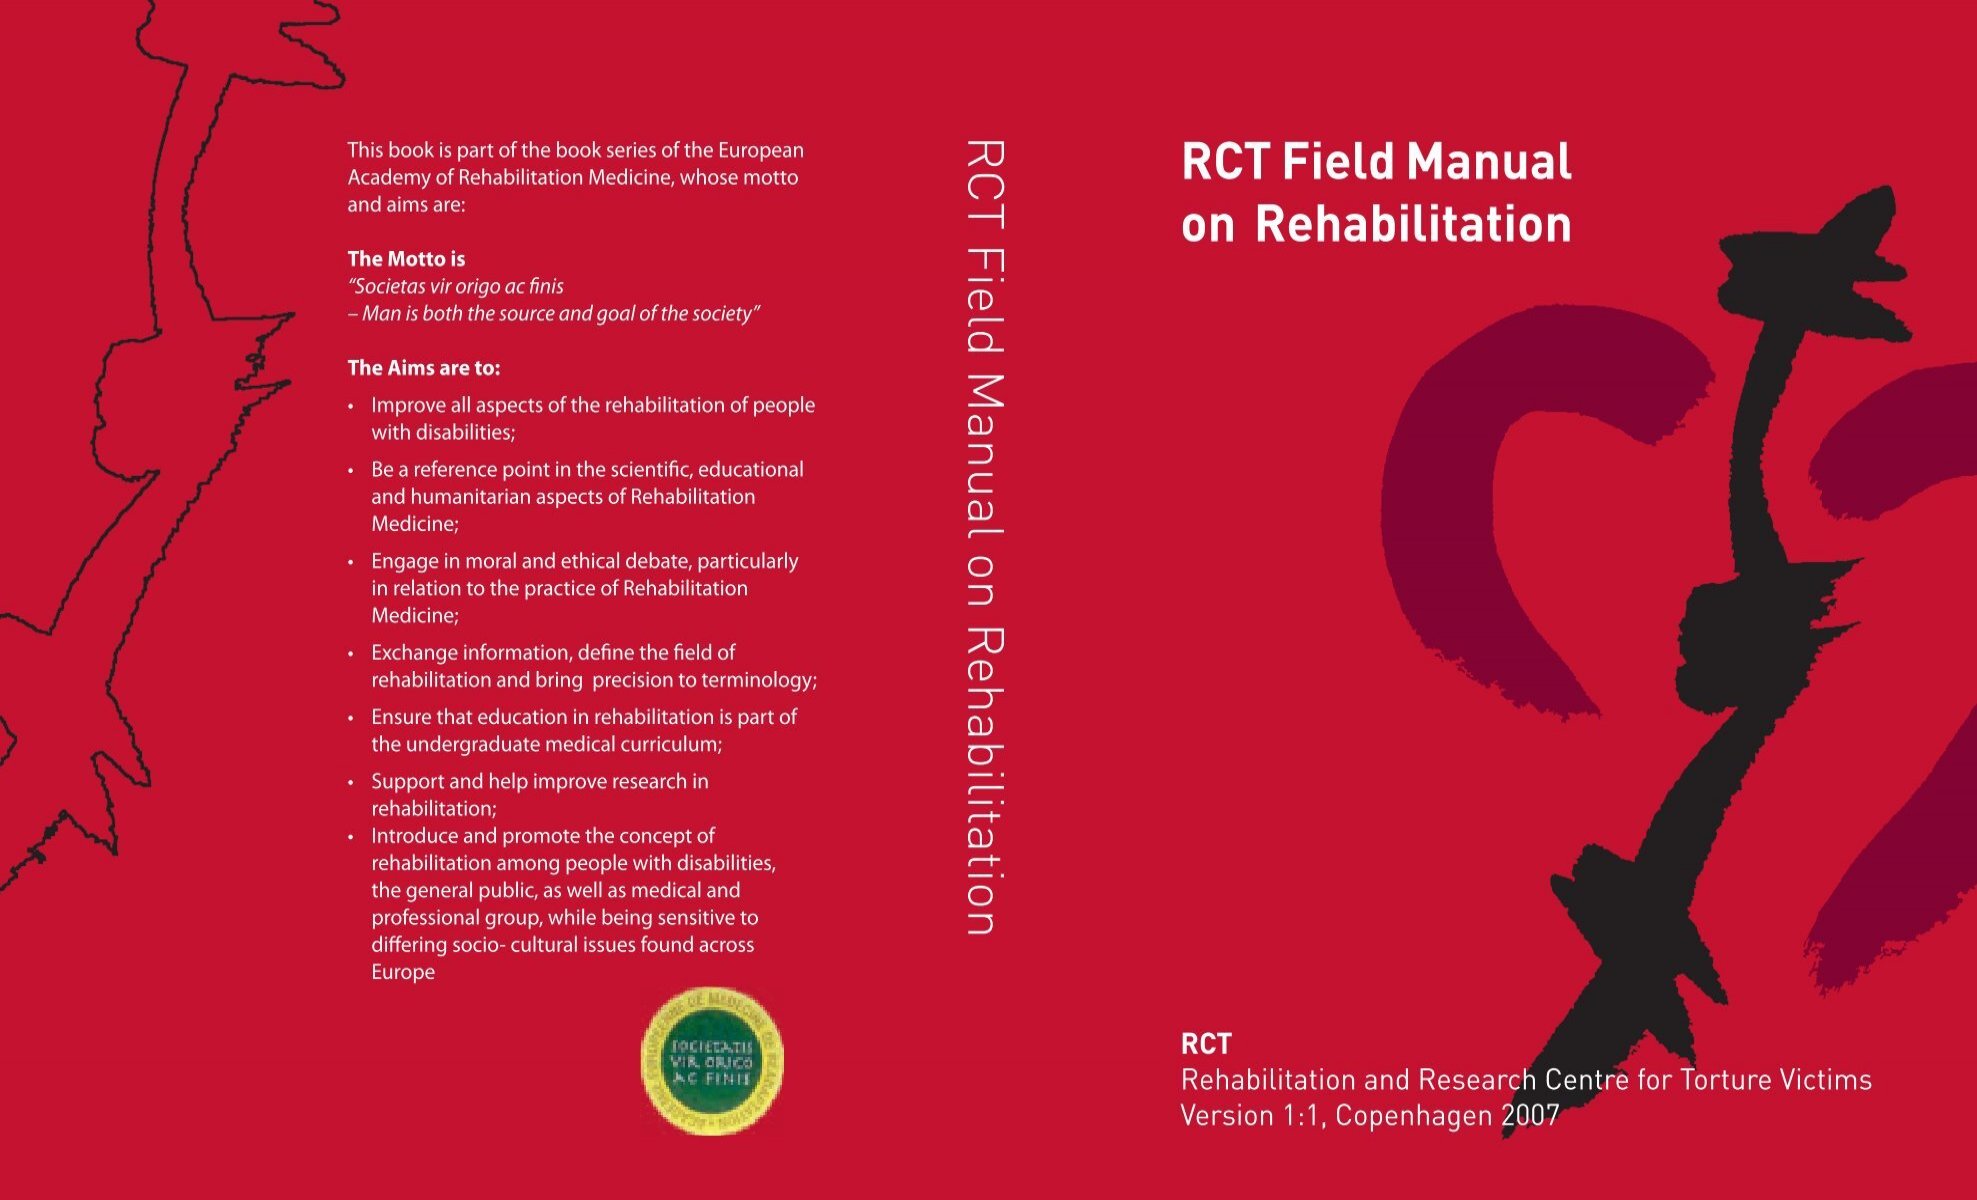 Lavet af Følge efter Landsdækkende RCT Field Manual on Rehabilitation